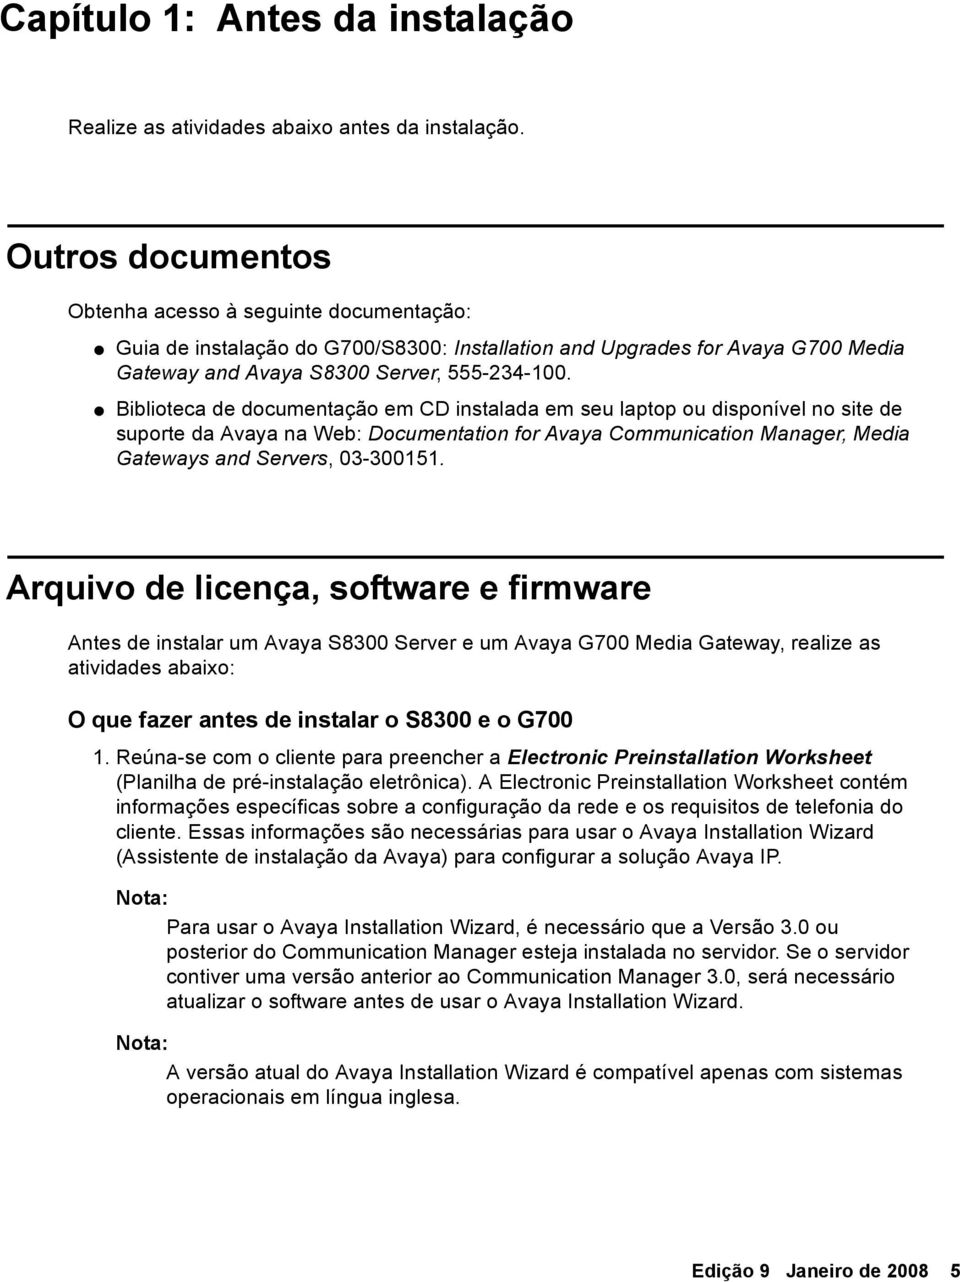 Biblioteca de documentação em CD instalada em seu laptop ou disponível no site de suporte da Avaya na Web: Documentation for Avaya Communication Manager, Media Gateways and Servers, 03-300151.